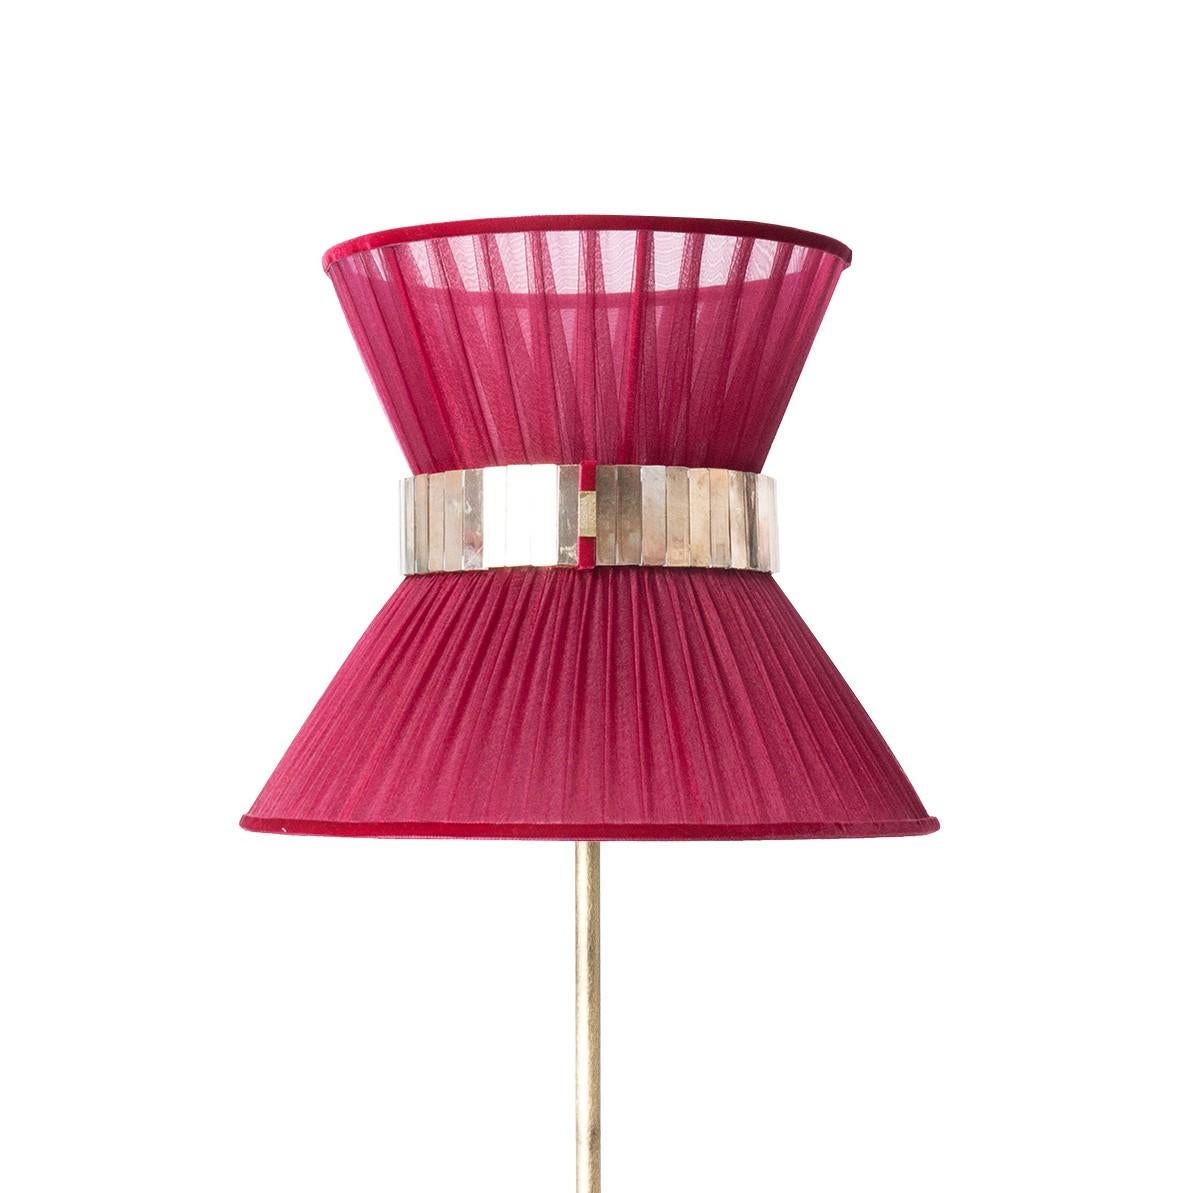 TIFFANY die kultige Lampe!

Sabrinas atemberaubende Collection'S von Tiffany-Lampen wird vorgestellt.
Tiffany, eine zeitlose Lampe, inspiriert durch den internationalen Film 